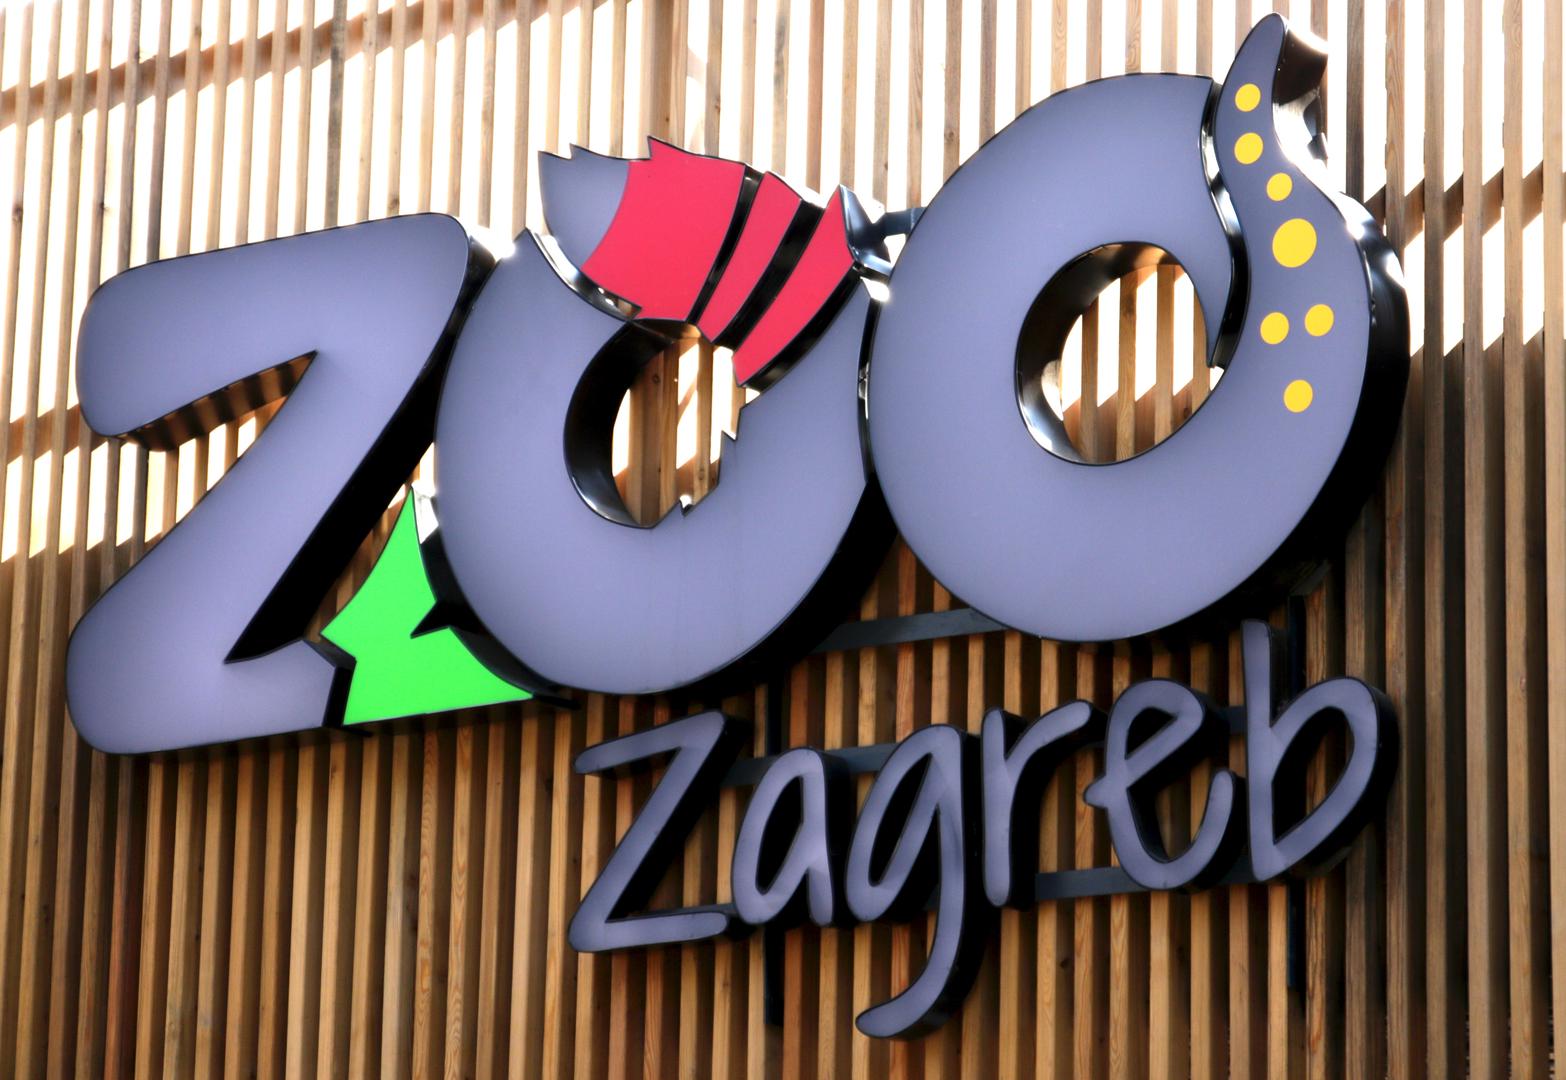 46. Zoološki vrt Zagreb: Ukupno mentiona: 11,313; Prošlogodišnji poredak: 43 (↓3)